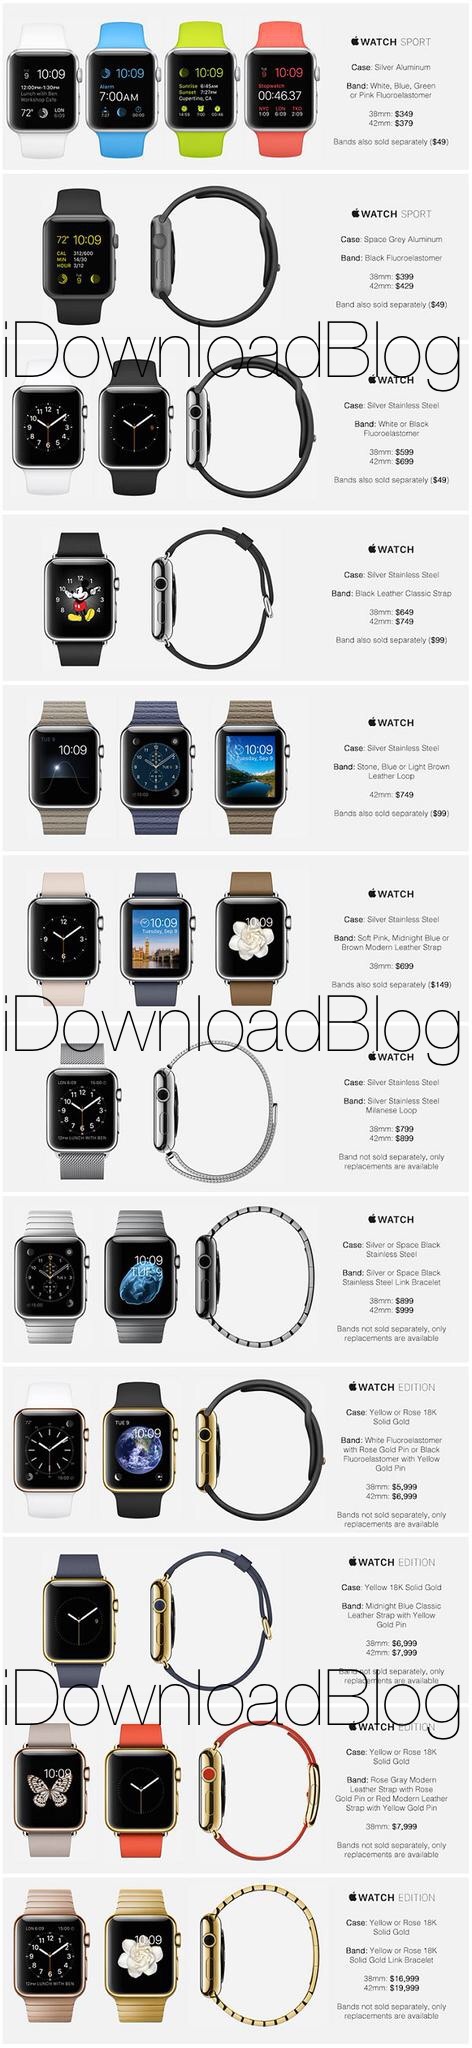 Est-ce là, la liste des prix de l'Apple Watch ? (20 000$ pour la version ultime)